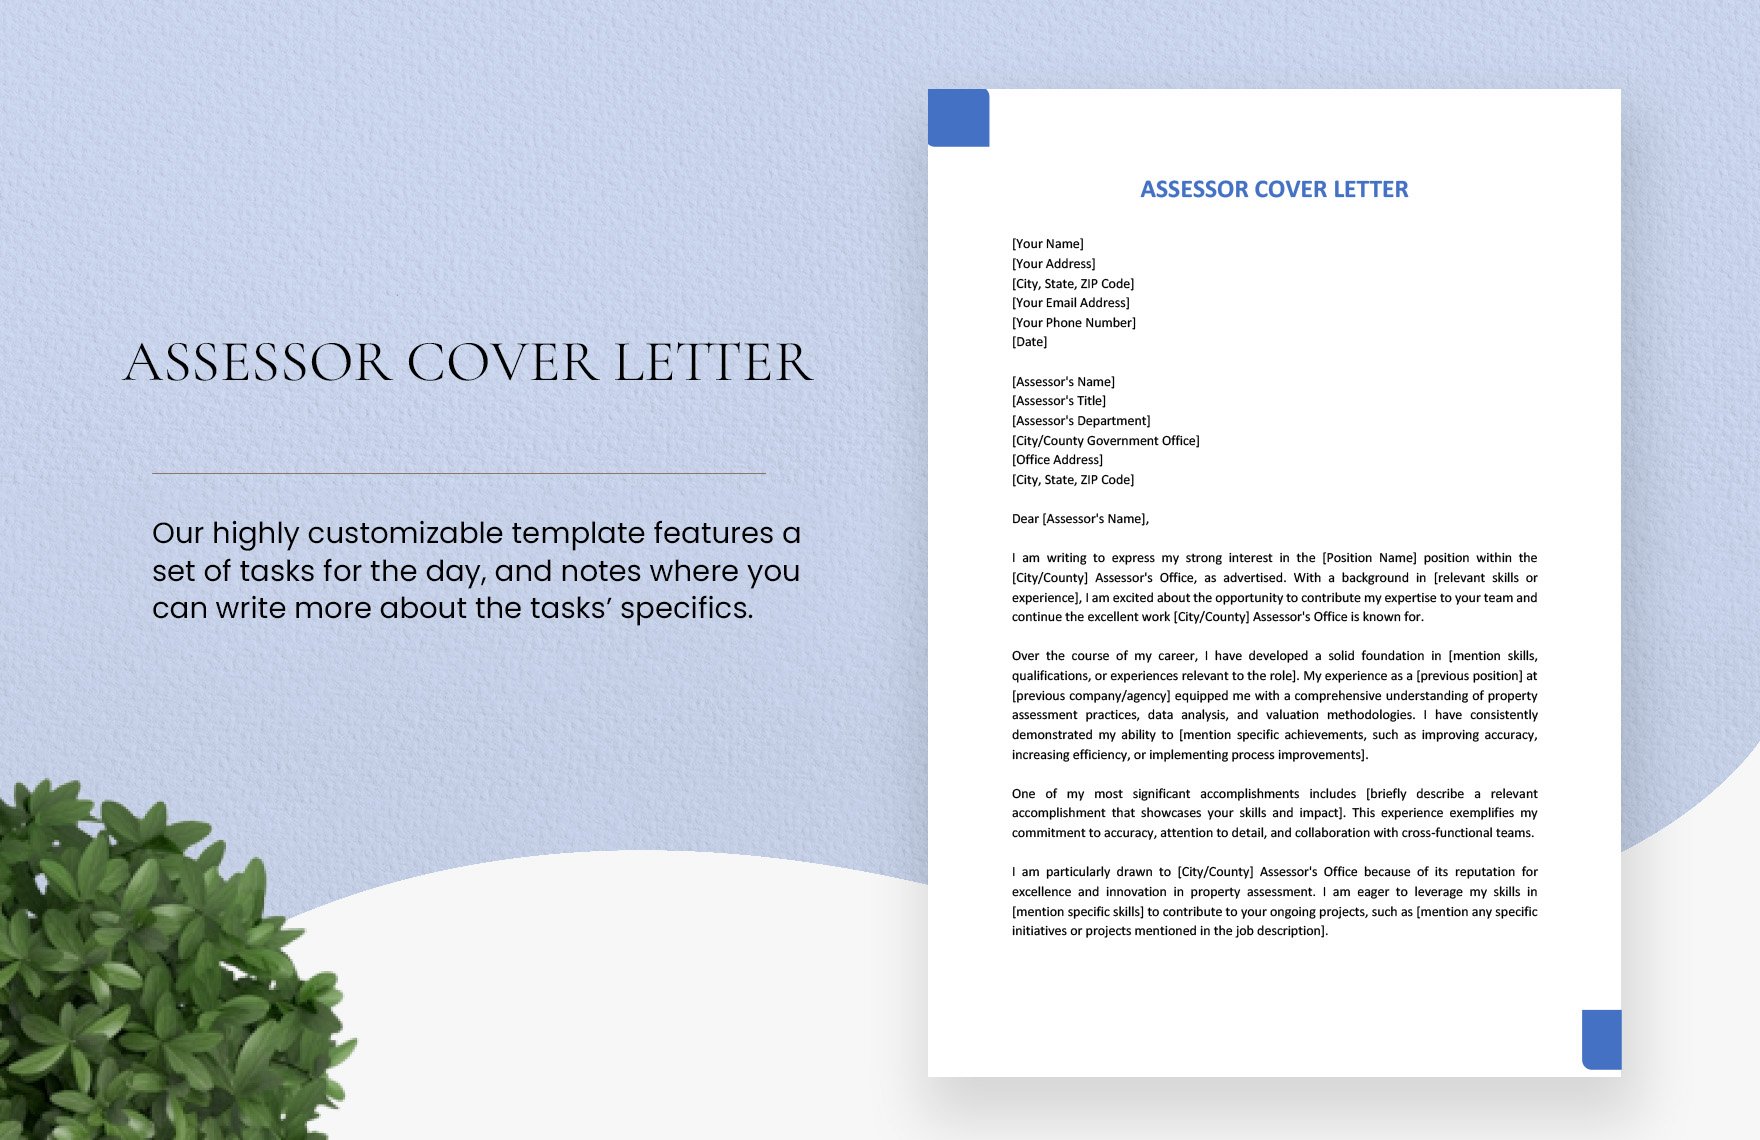 Assessor Cover Letter in Word, Google Docs, PDF